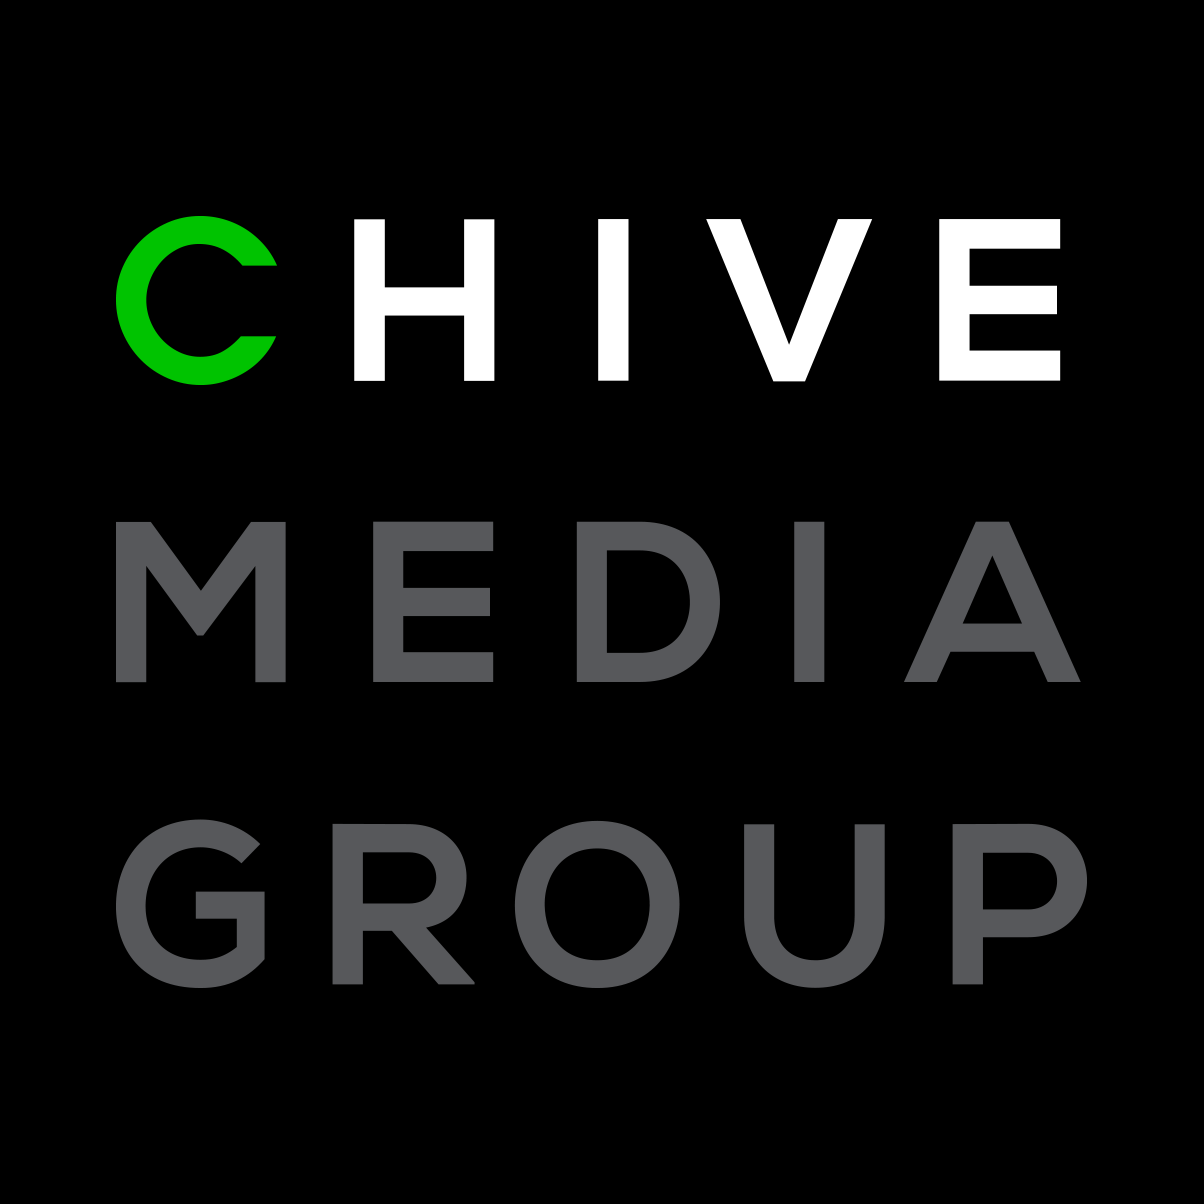 Chive Media Group logo